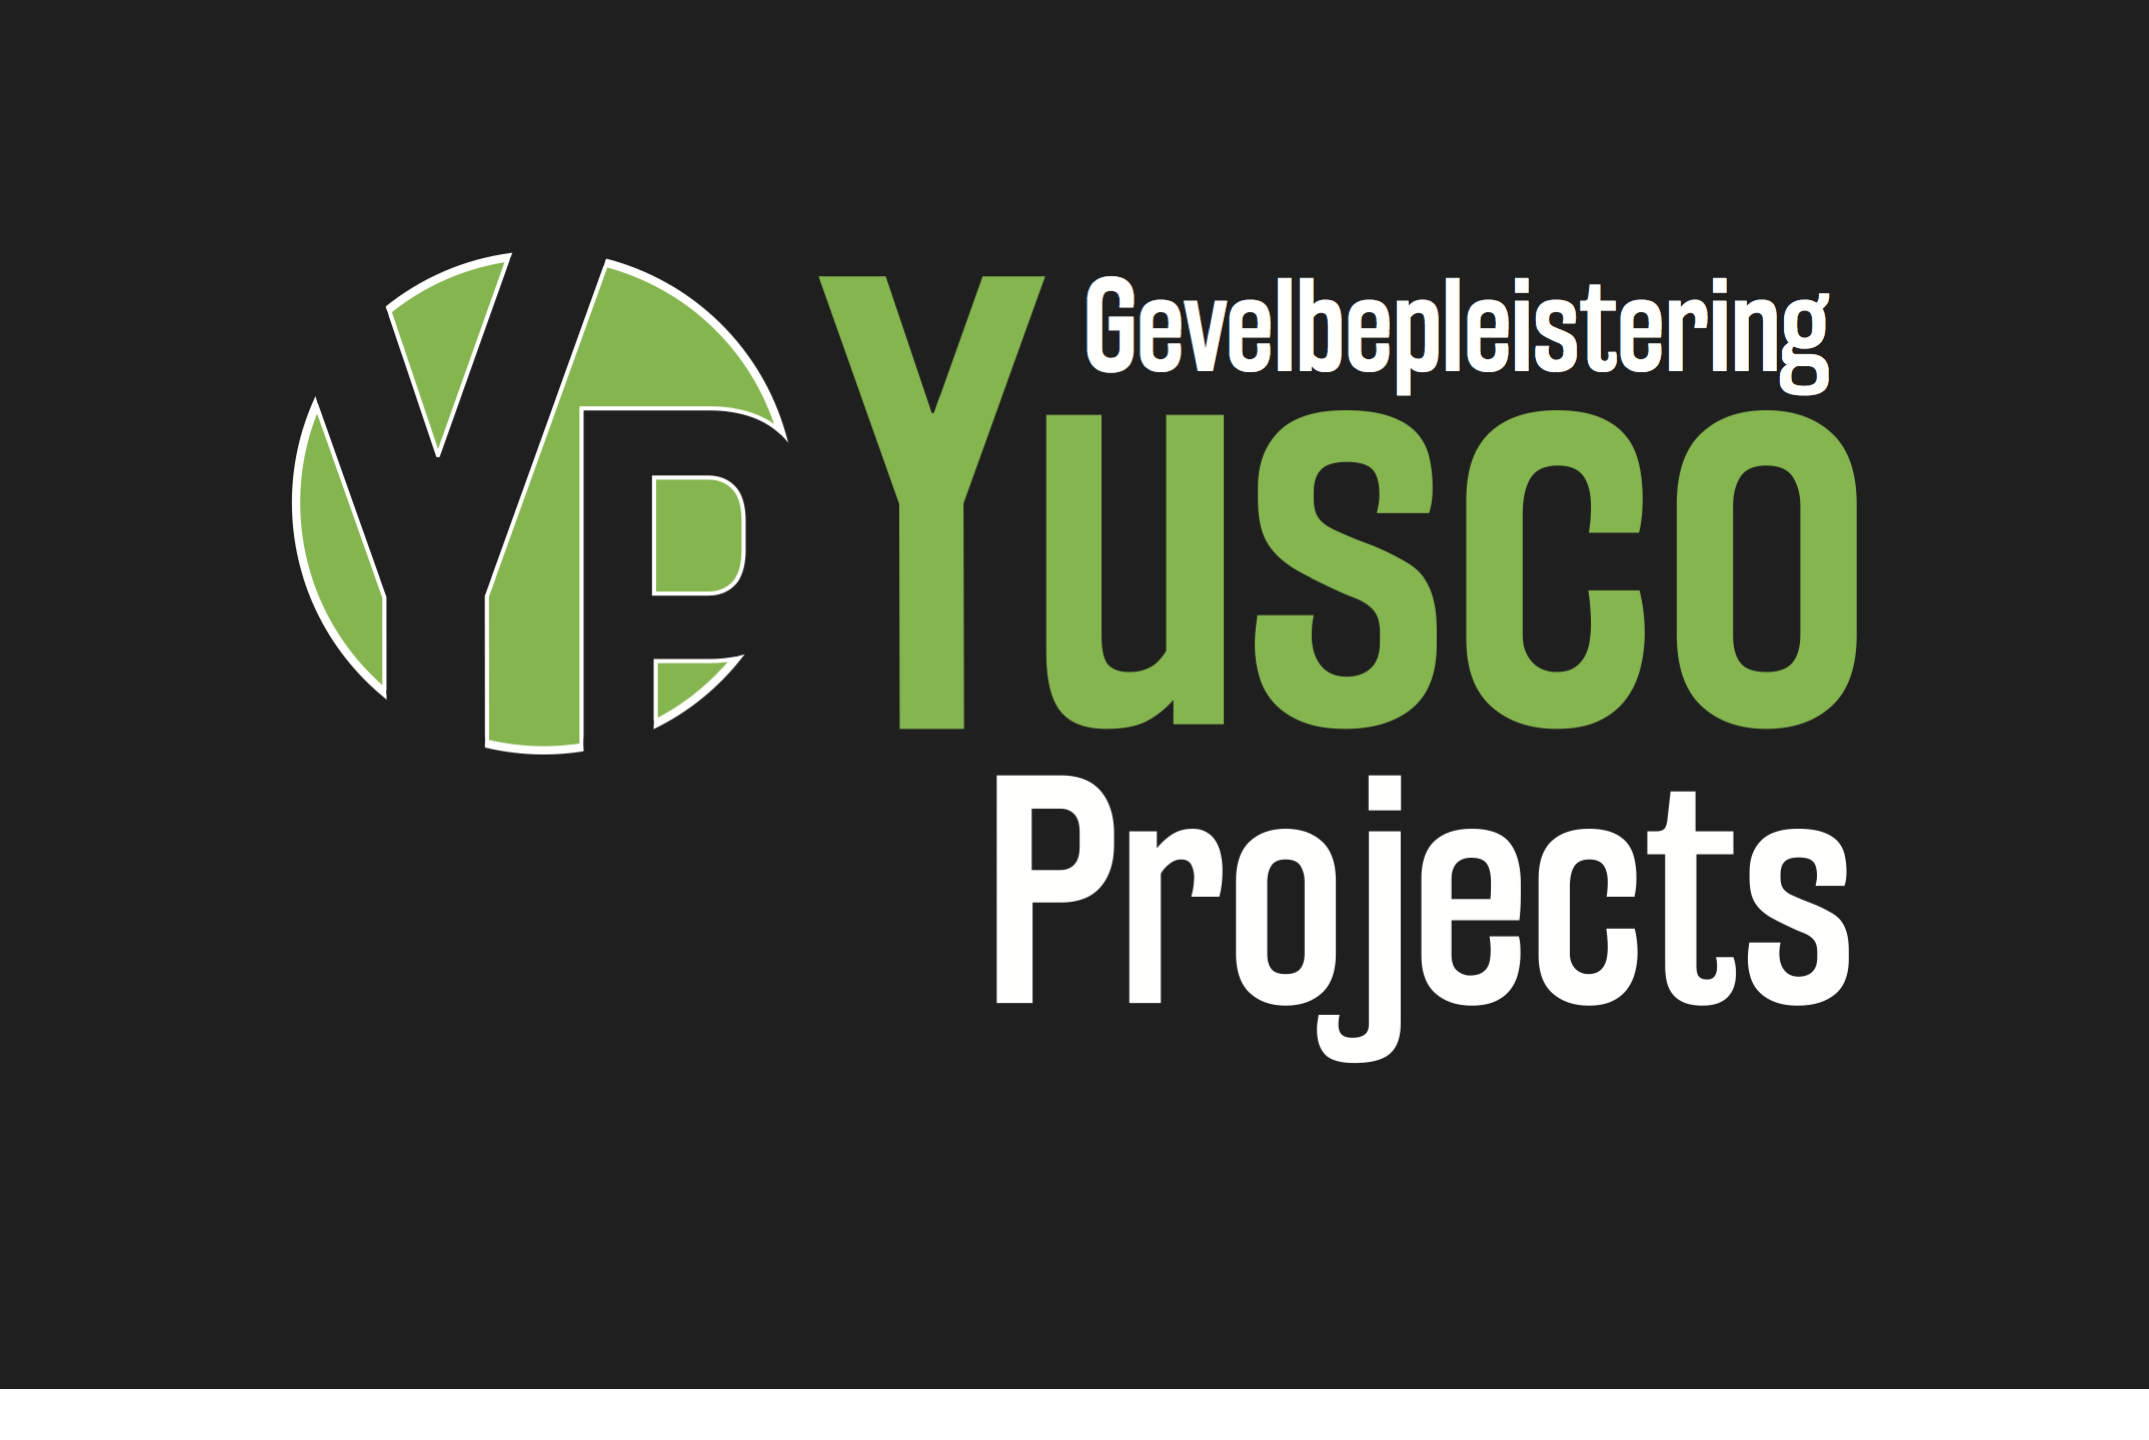 bouwaannemers Lebbeke Yusco Projects Gevelbepleistering